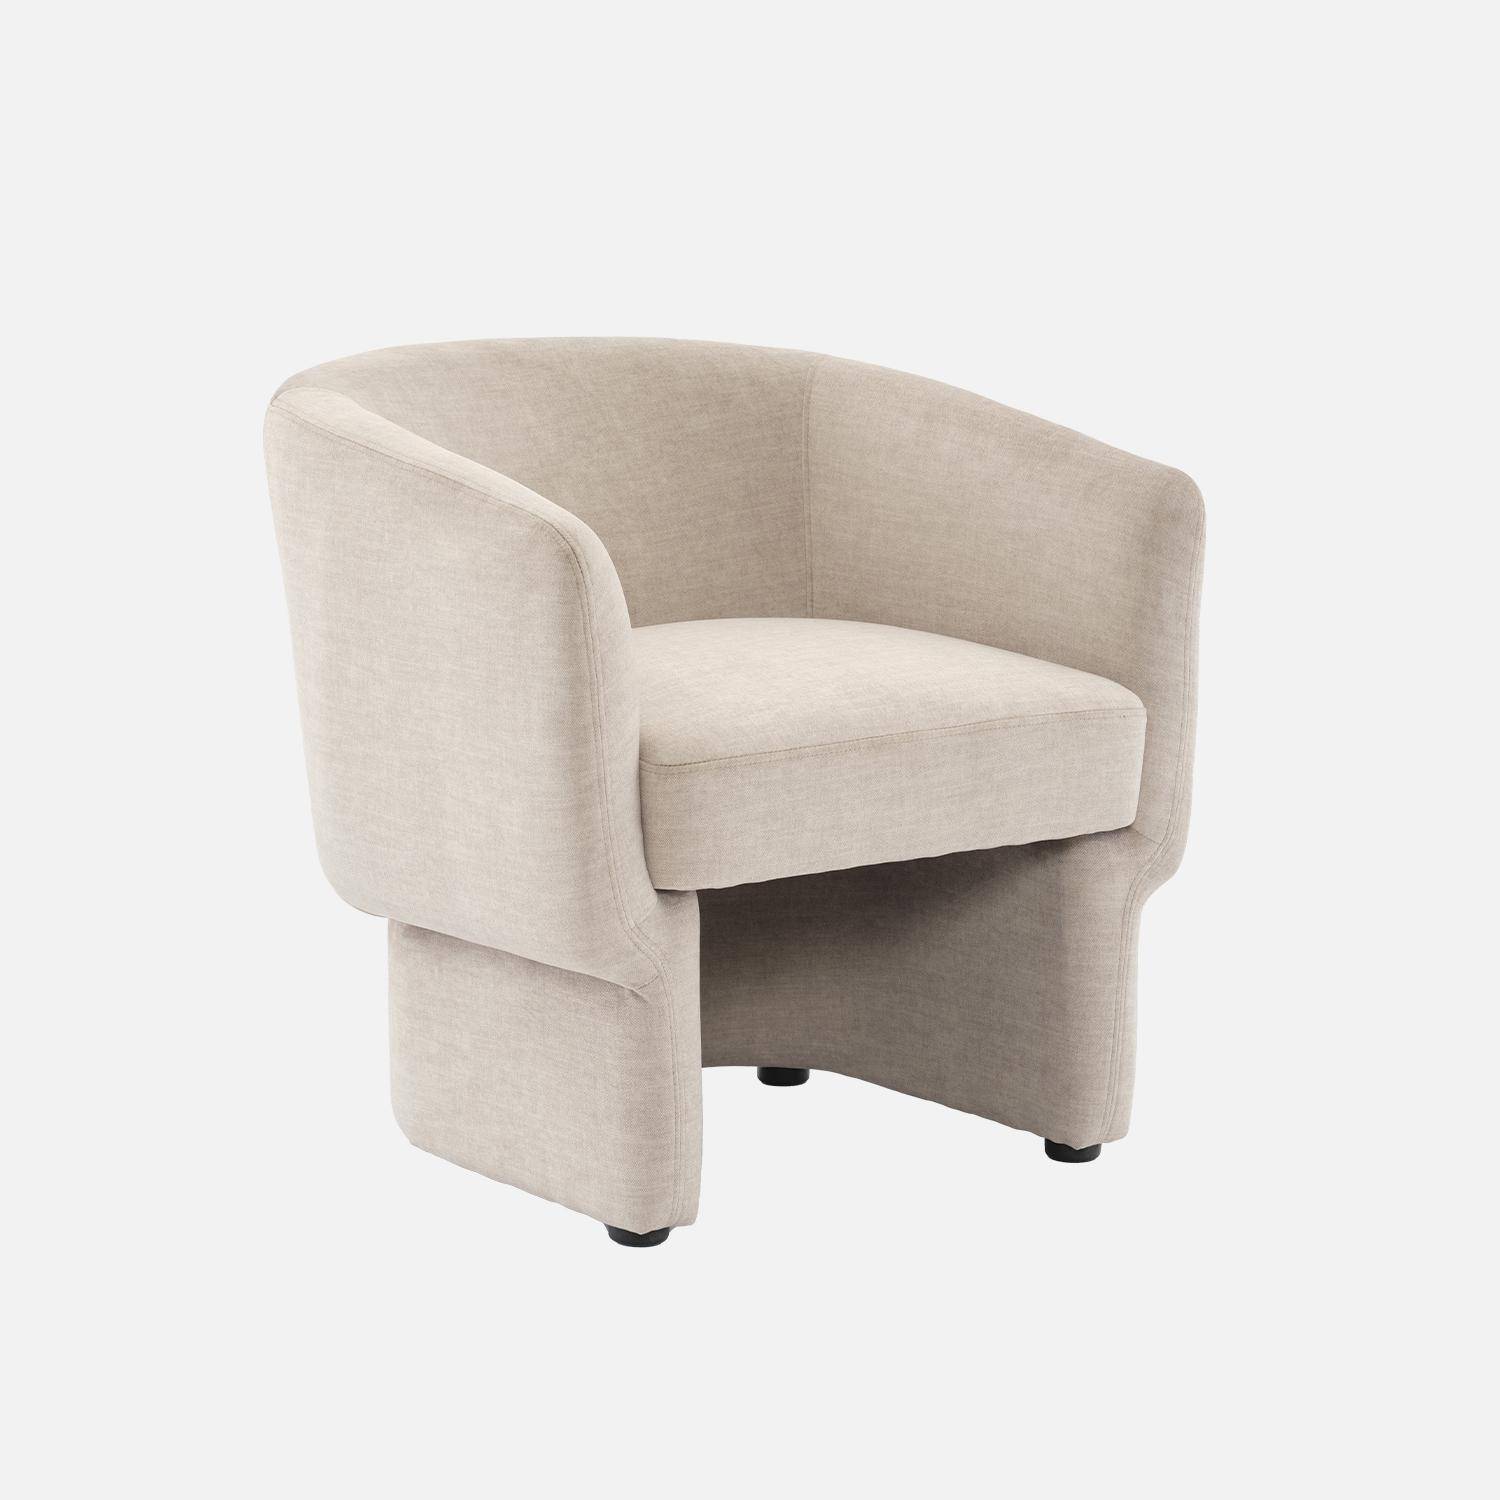 Beige stoffen fauteuil, Dolce, L 70 x P 70 x H 72cm, eucalyptushouten structuur Photo3